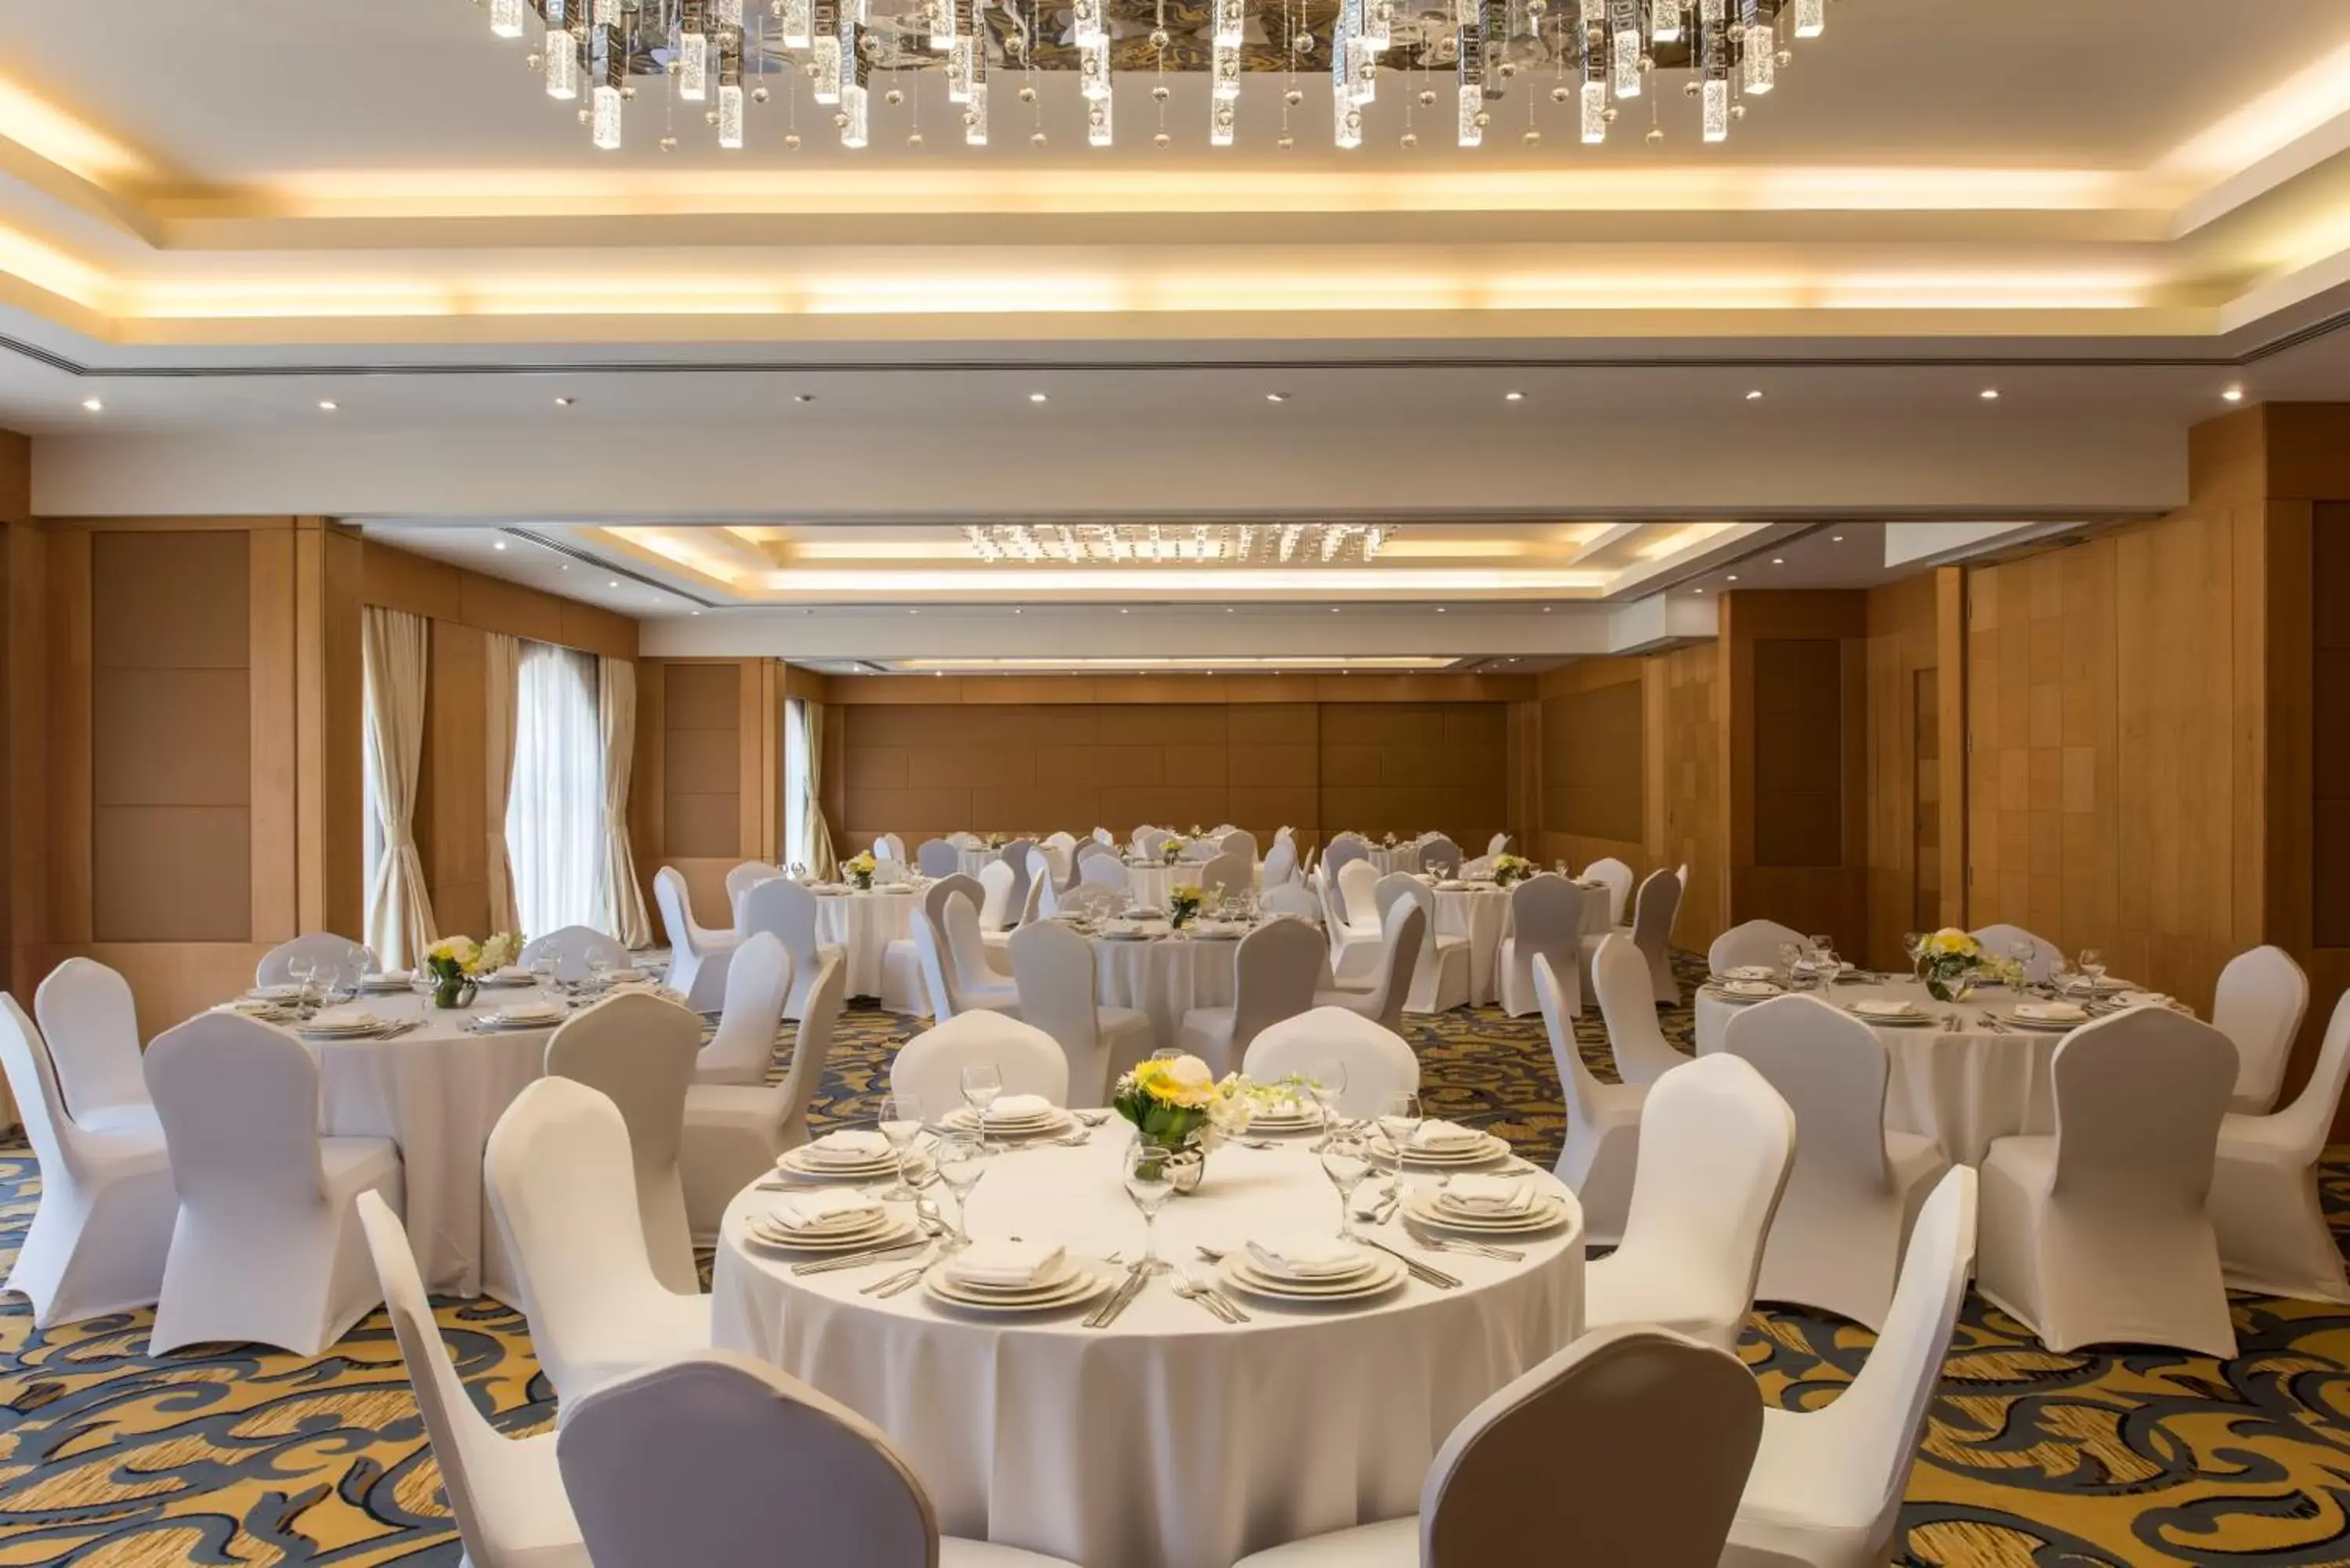 Banquet/Function facilities, Banquet Facilities in Concorde Hotel Doha